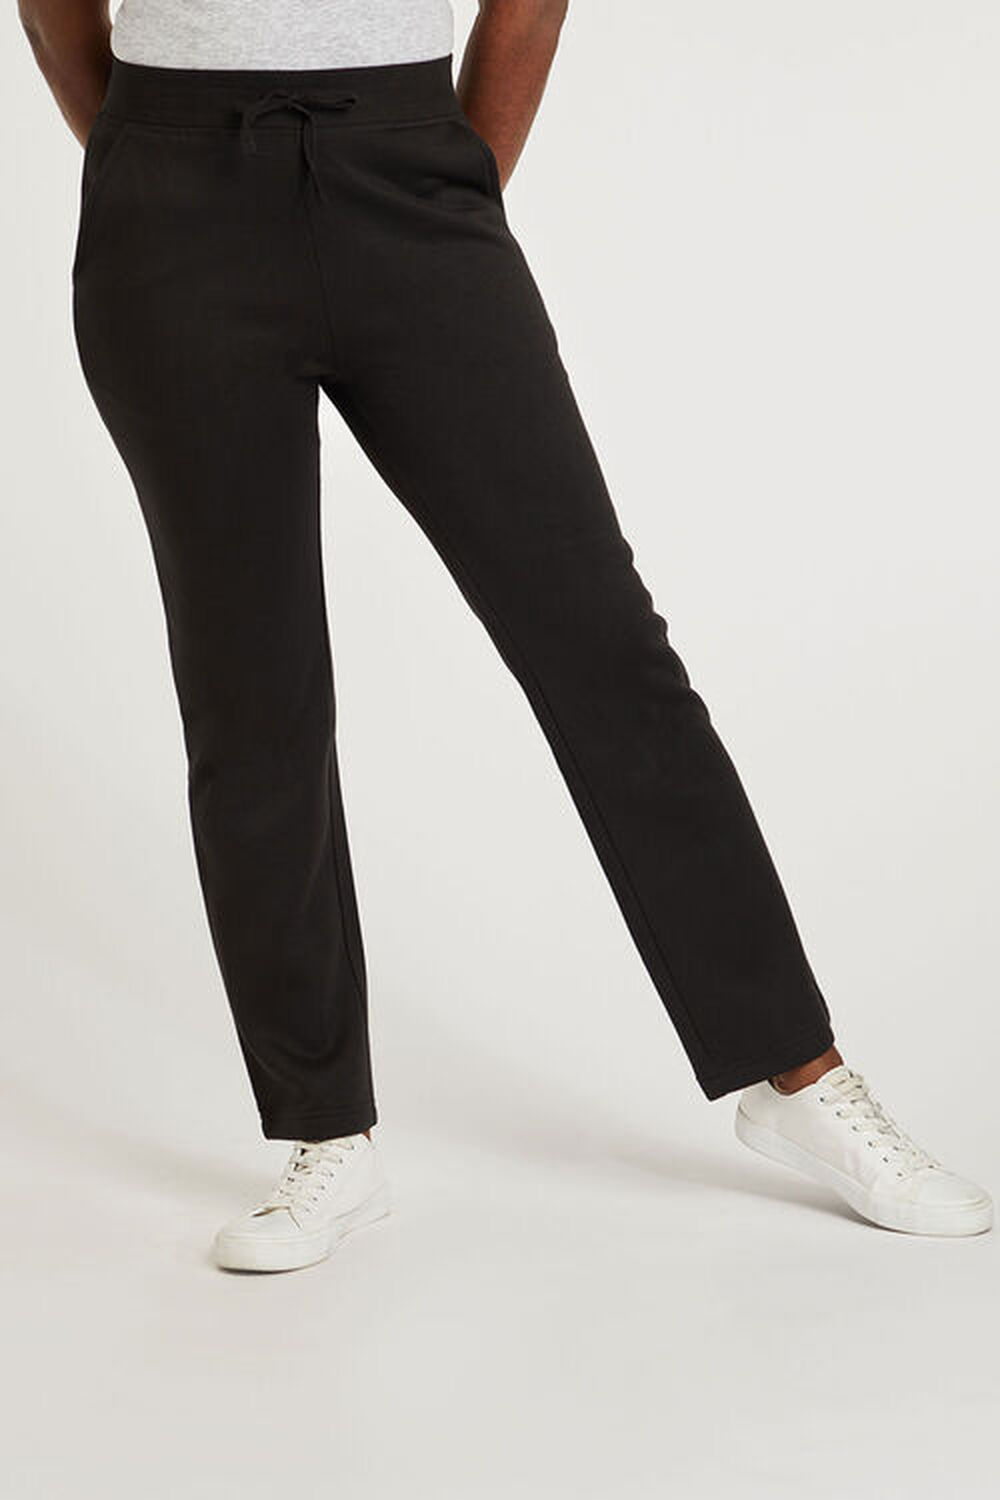 Bonmarche Black Jogging Pants, Size: 24